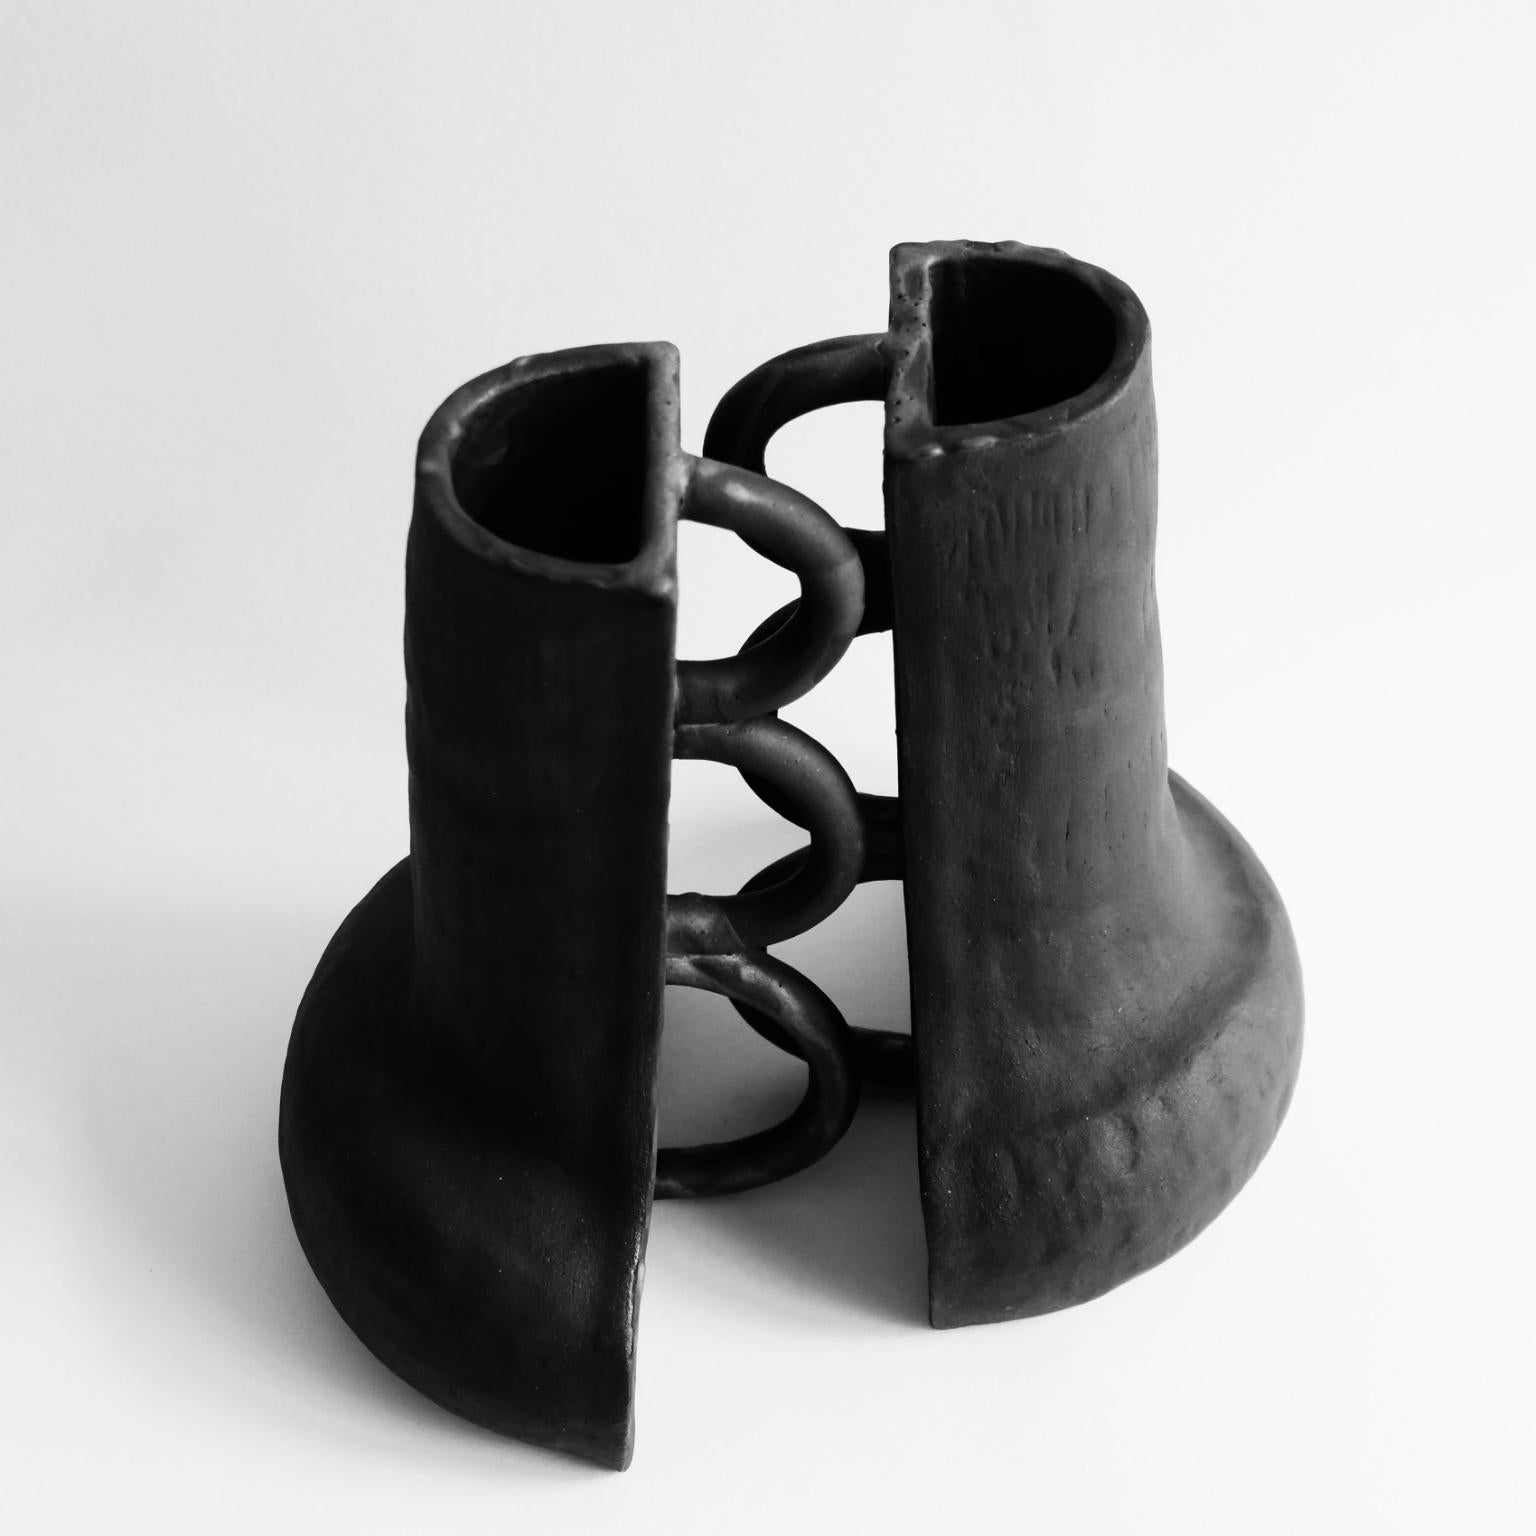 Set aus 2 skulpturalen Fragment 01 Vasen von Ia Kutateladze
Unverwechselbar
Abmessungen: B 19 x H 30 cm (jeweils).
MATERIALIEN: Roher schwarzer Ton.

Die Vase Fragment 01 ist ein skulpturales, funktionales Objekt, das aus schwarzem Ton handgefertigt